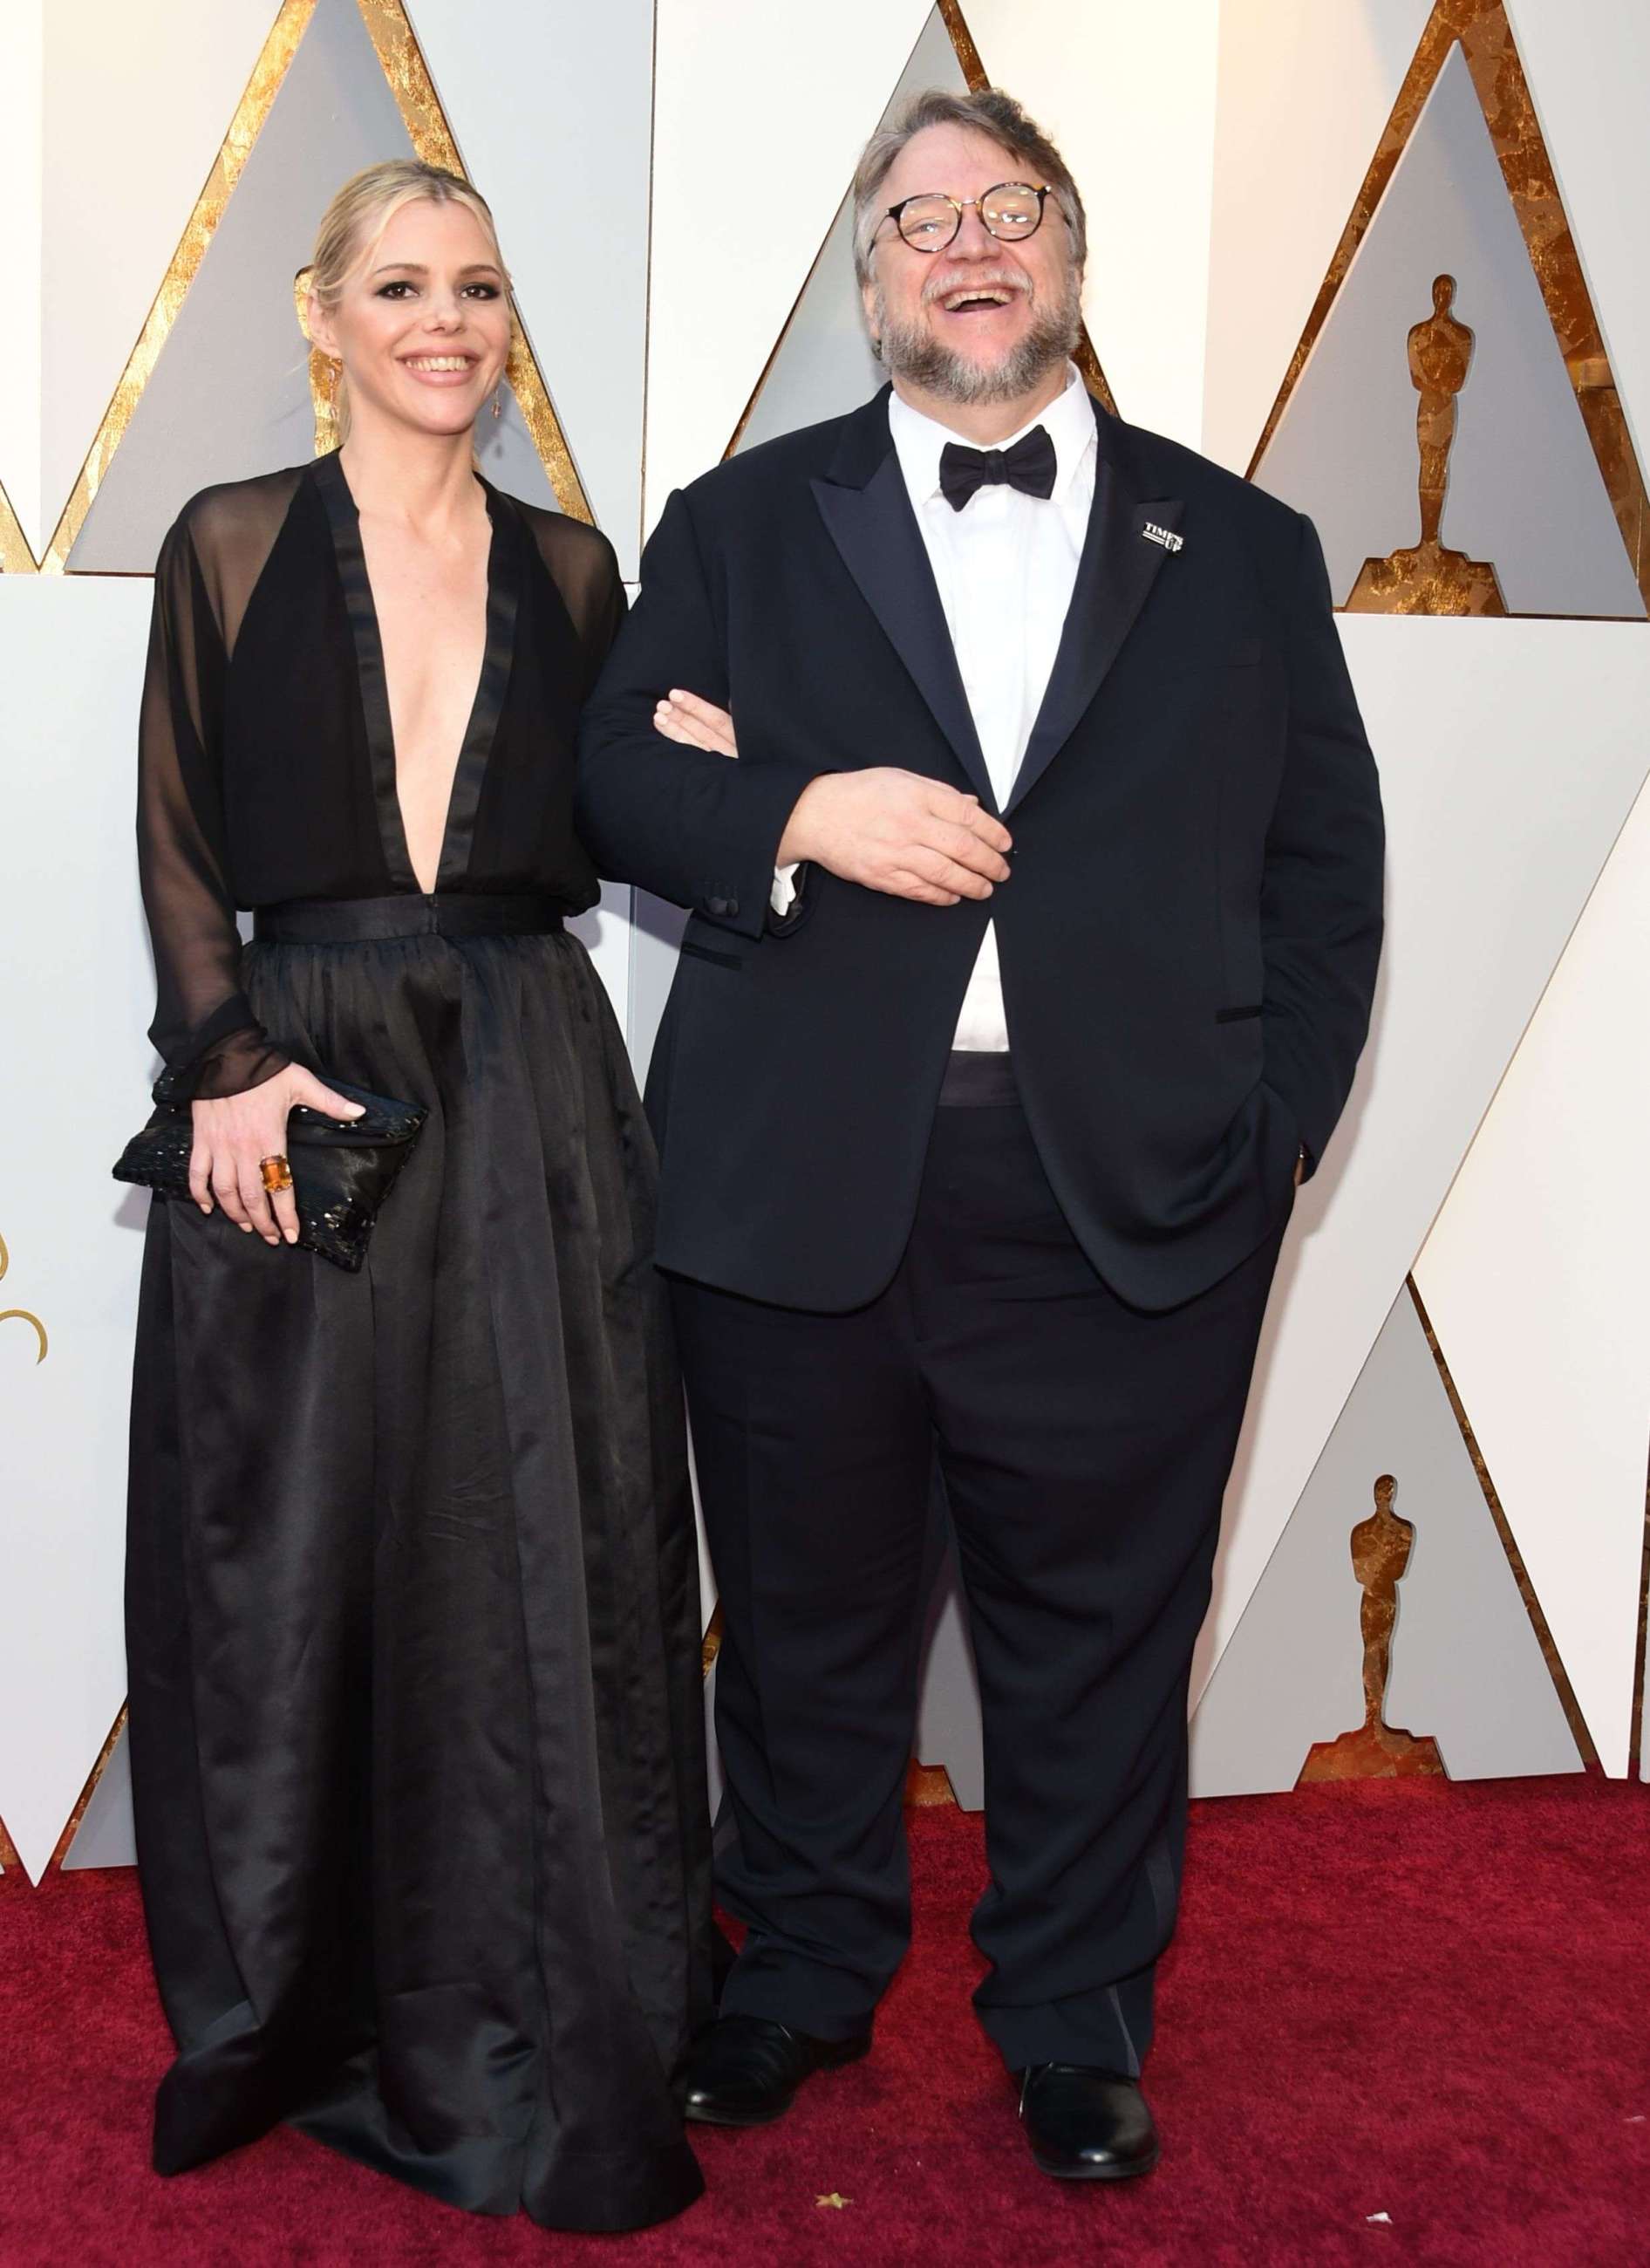 Quién es Kim Morgan, la nueva esposa de Guillermo del Toro?